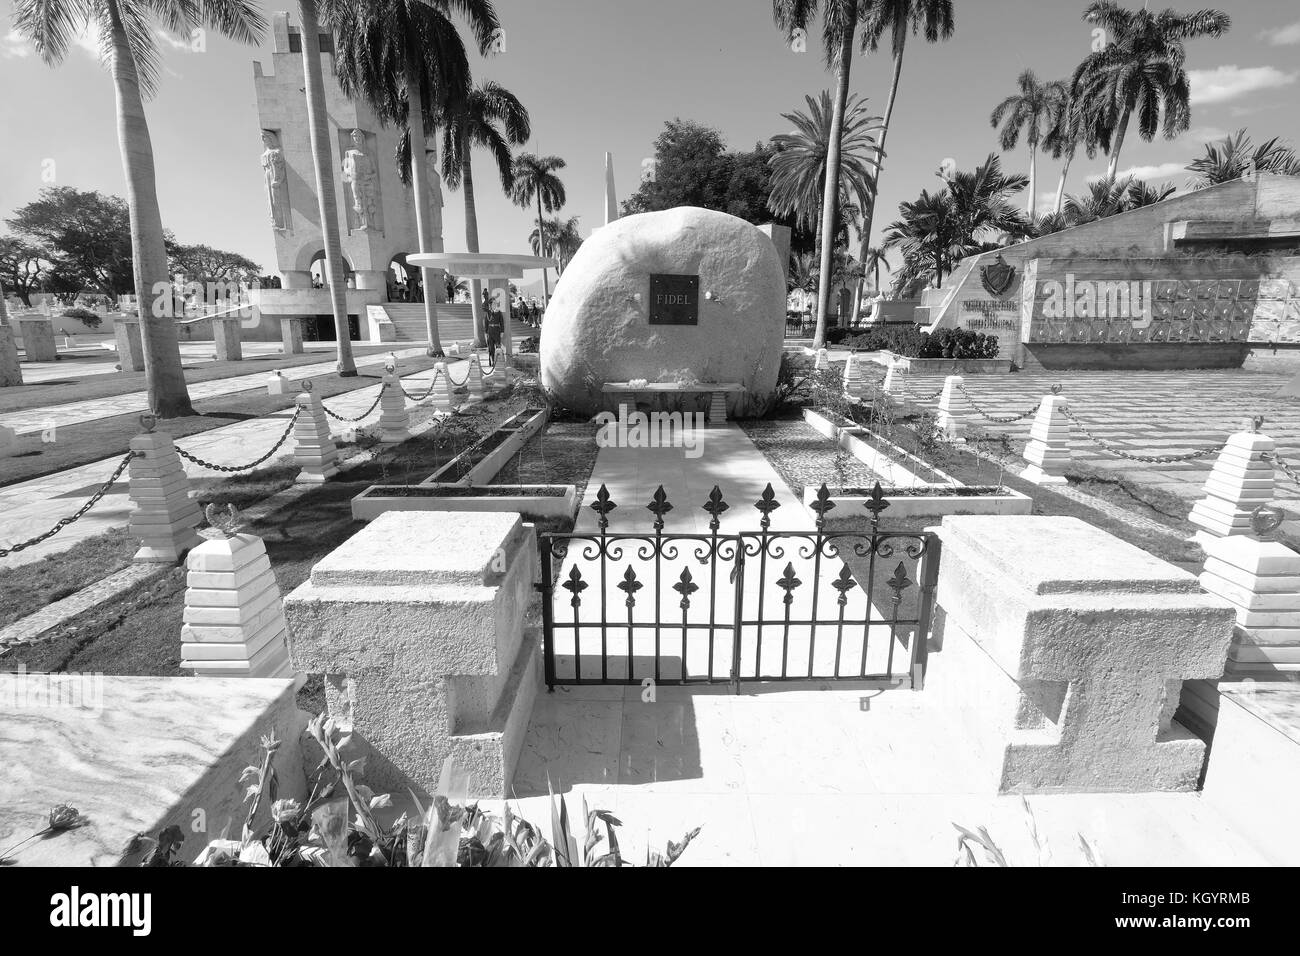 Sights outside of Fidel Castro's tomb,Santa Ifigenia Cemetery,Santiago de Cuba,Cuba Stock Photo